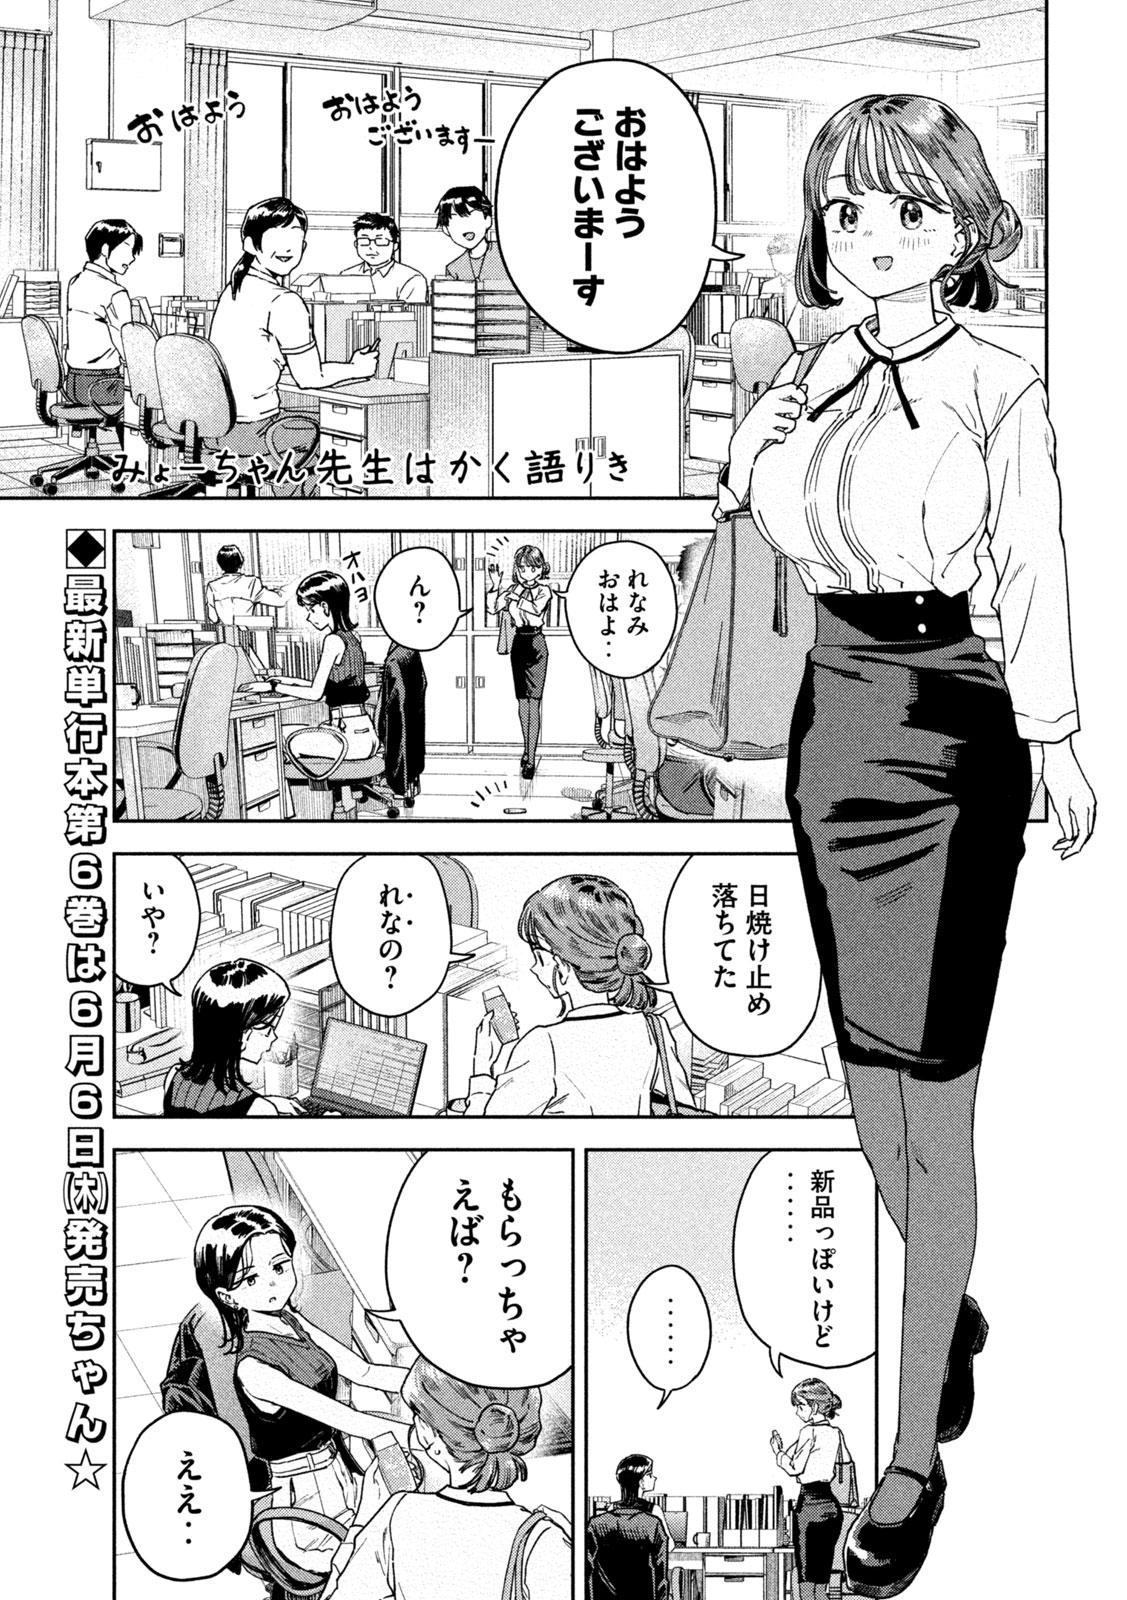 Myo-chan Sensei wa Kaku Katariki - Chapter 49 - Page 1